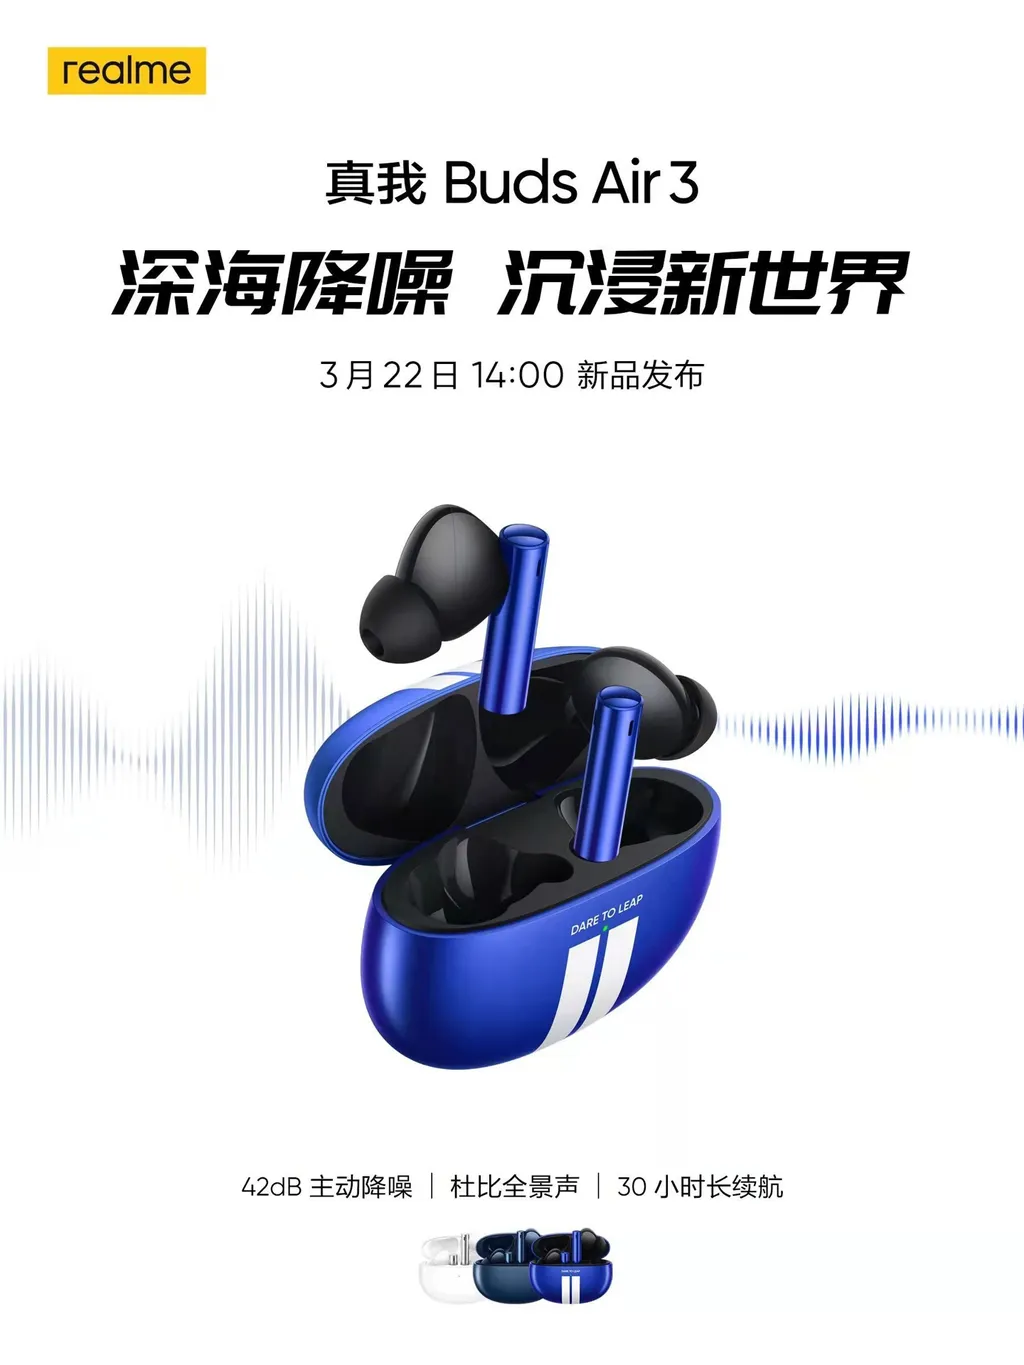 Realme Buds Air 3 tem teaser oficial divulgado na China (Imagem: Reprodução/Realme)